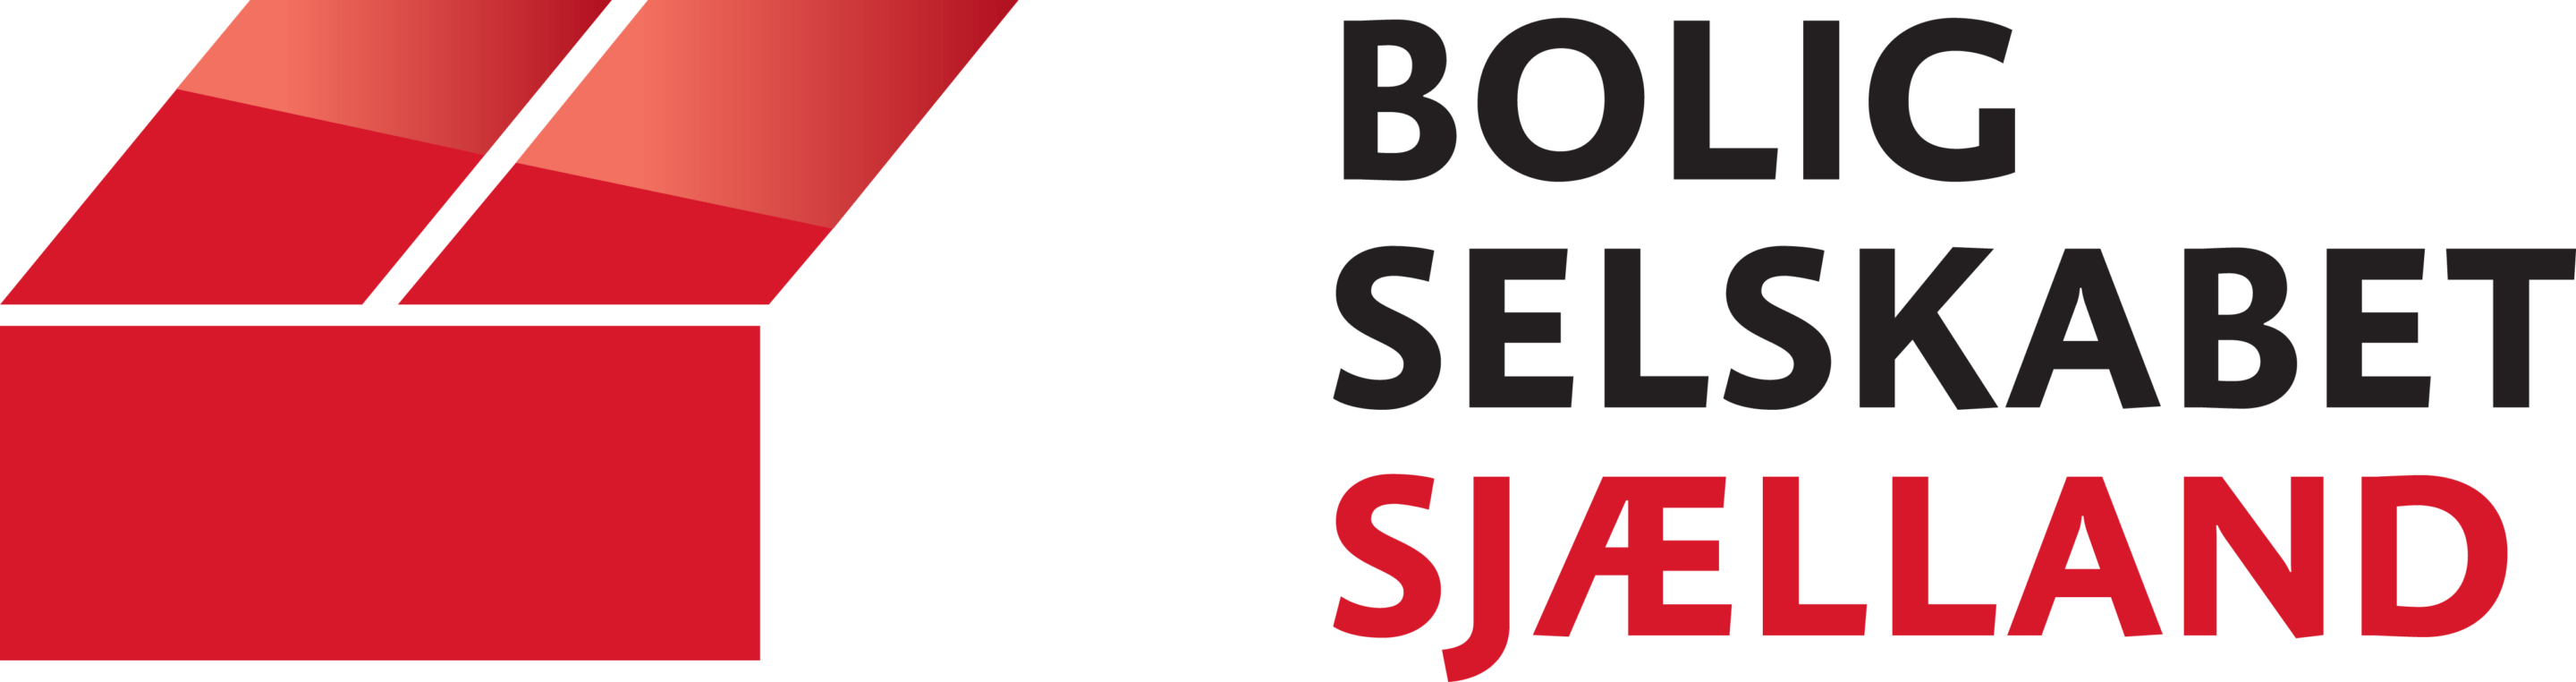 Boligselskabet Sjællands logo